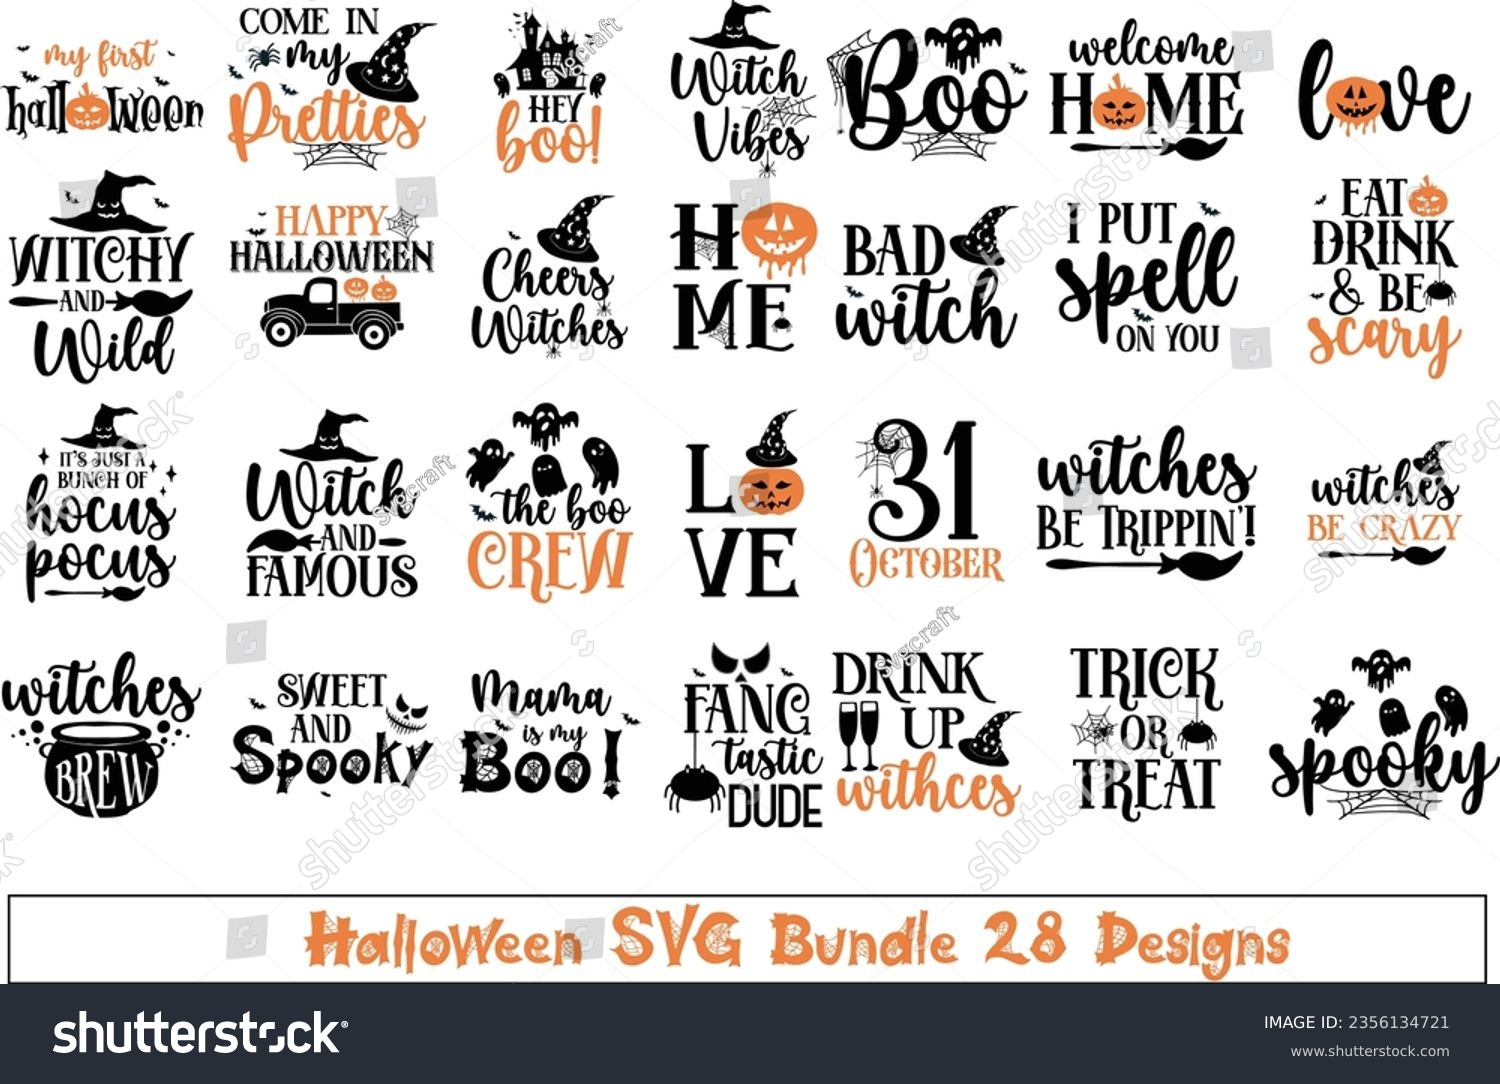 SVG of Halloween Svg Bundle,Halloween Vector,Sarcastic Svg,Funny Mom Svg,Witch Svg, svg